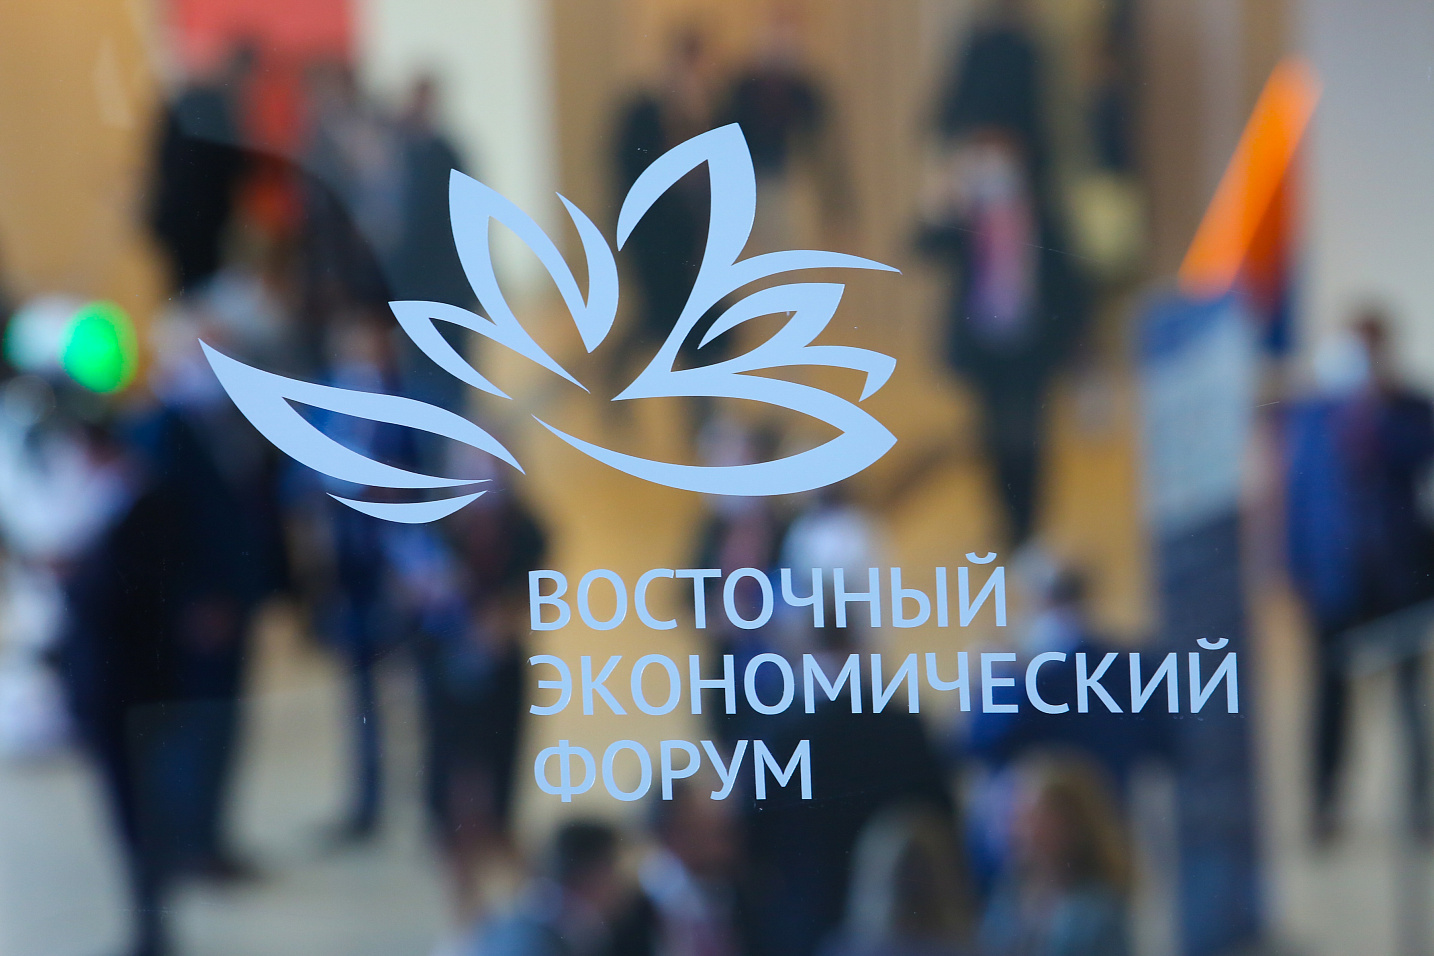 Организаторы уточнили даты проведения Восточного экономического форума